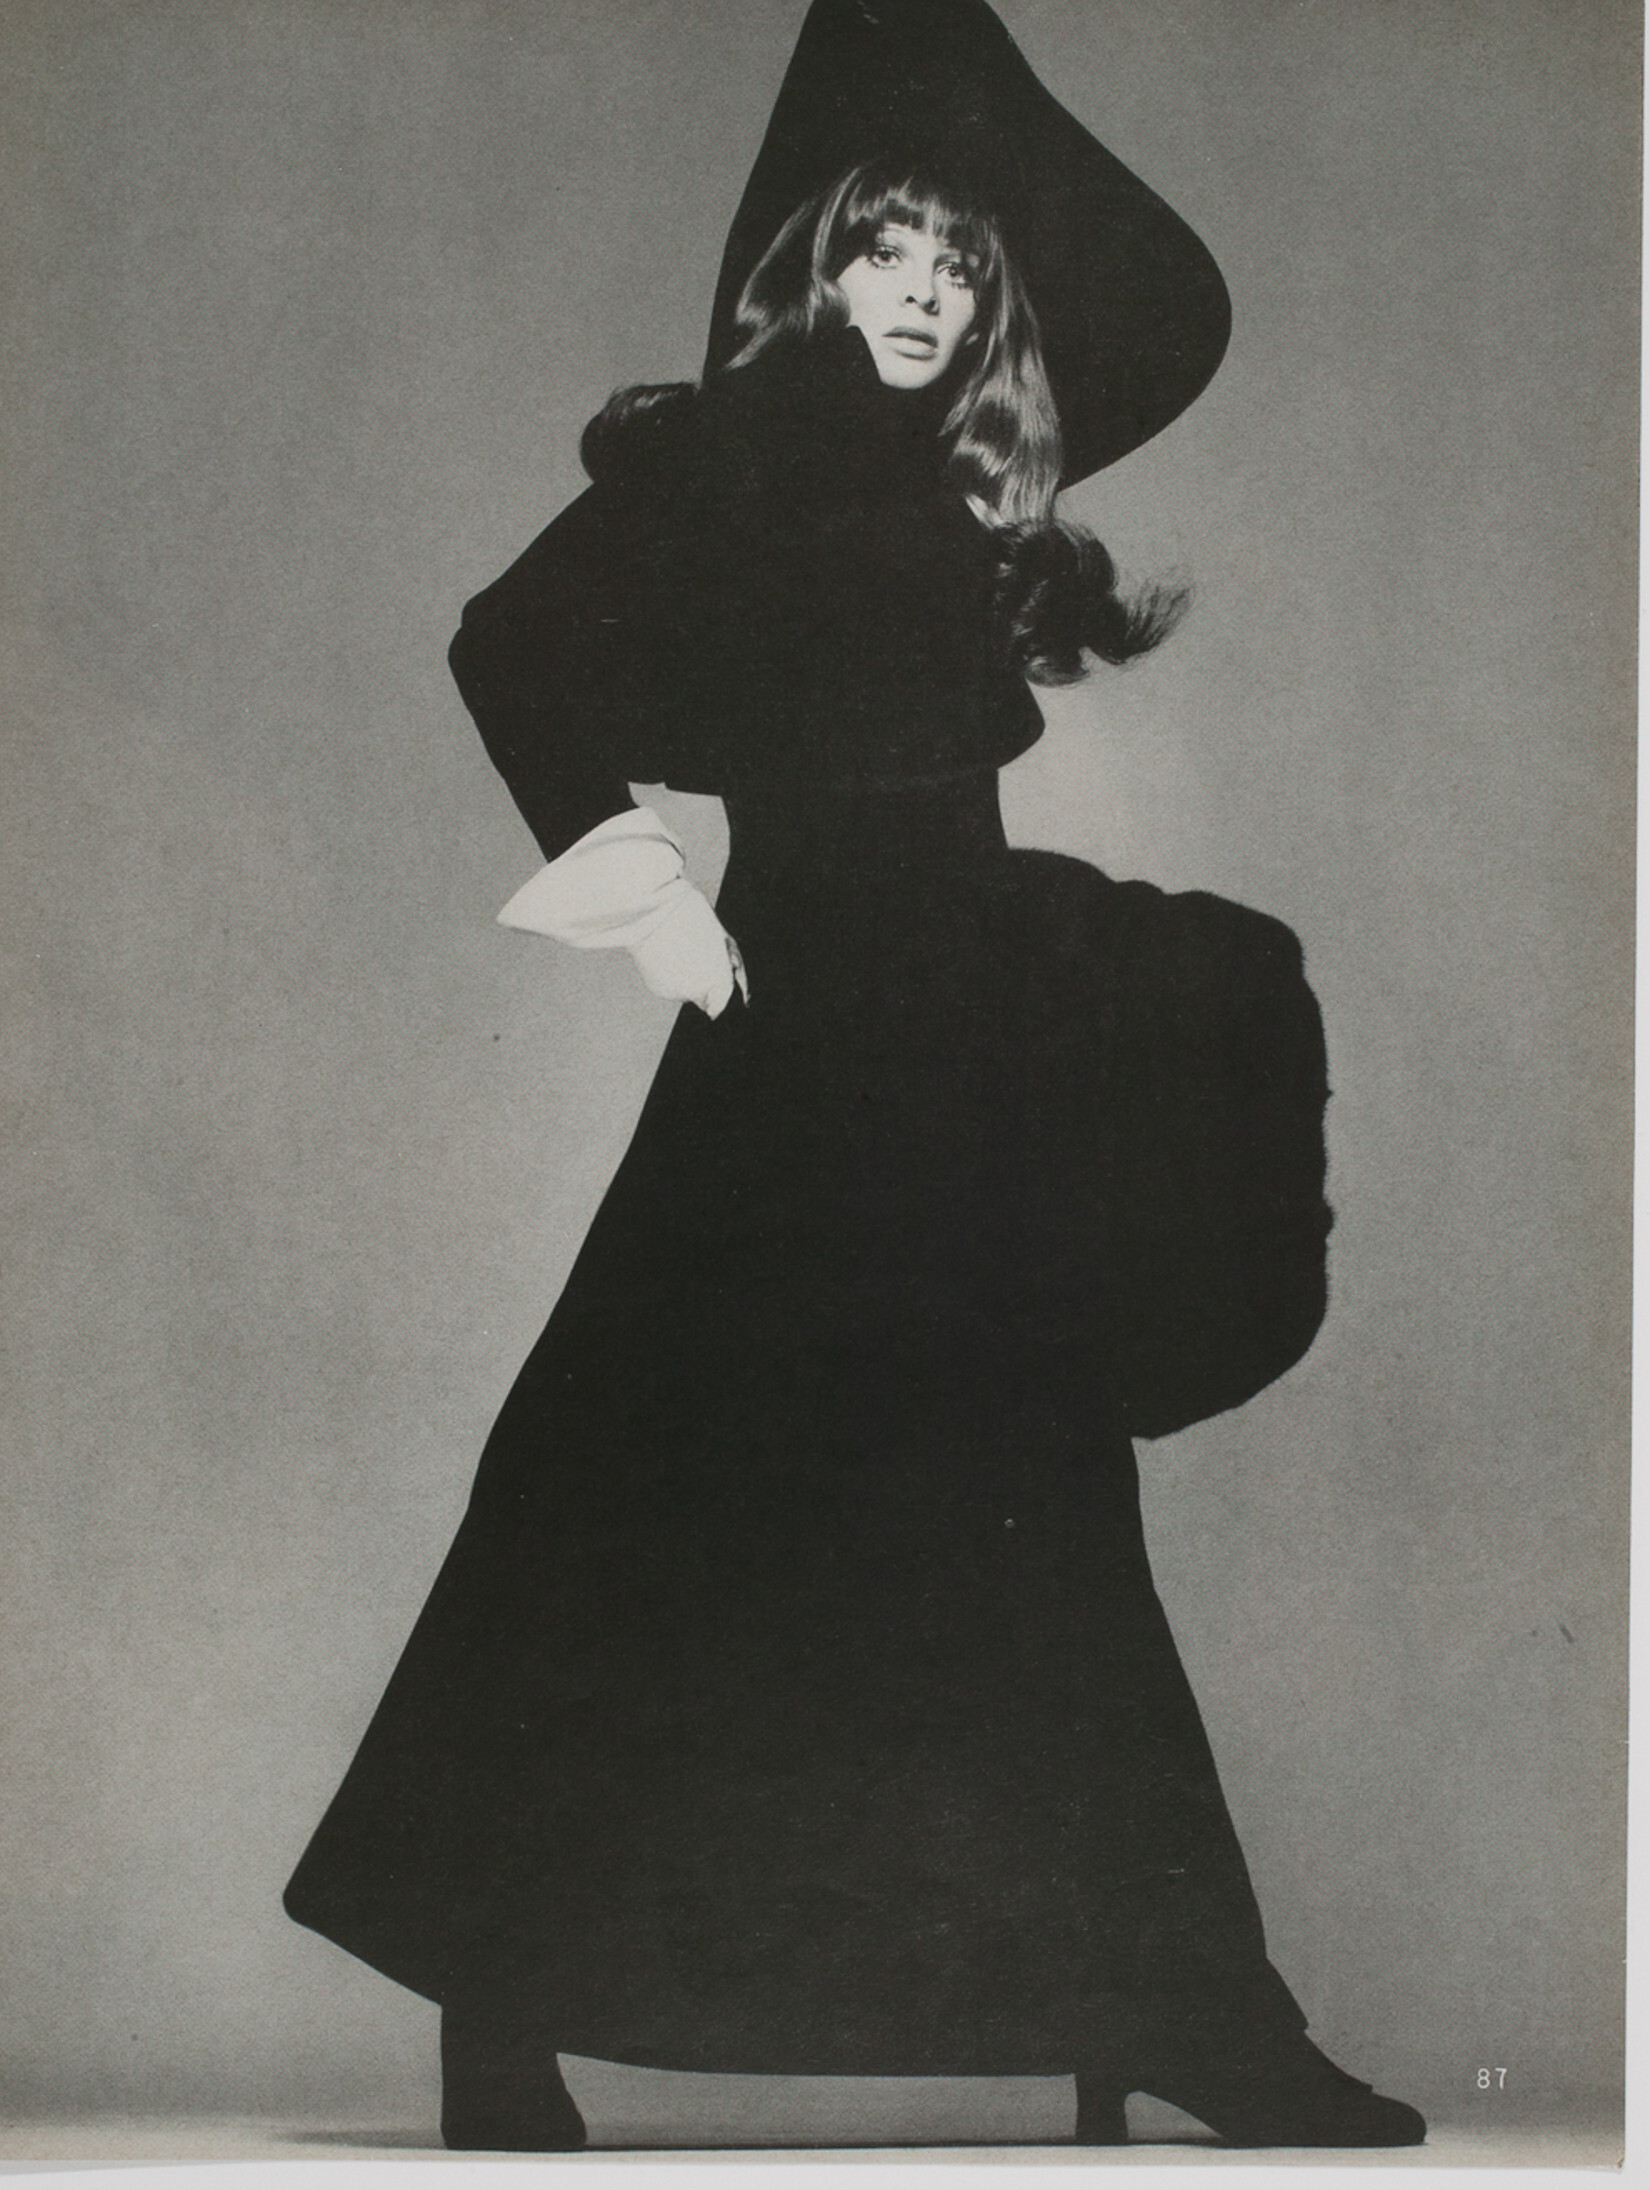 Британская актриса Джули Кристи позирует для Vogue в черном бархатном пальто и муфте, 1967 г. Фотограф Ричард Аведон